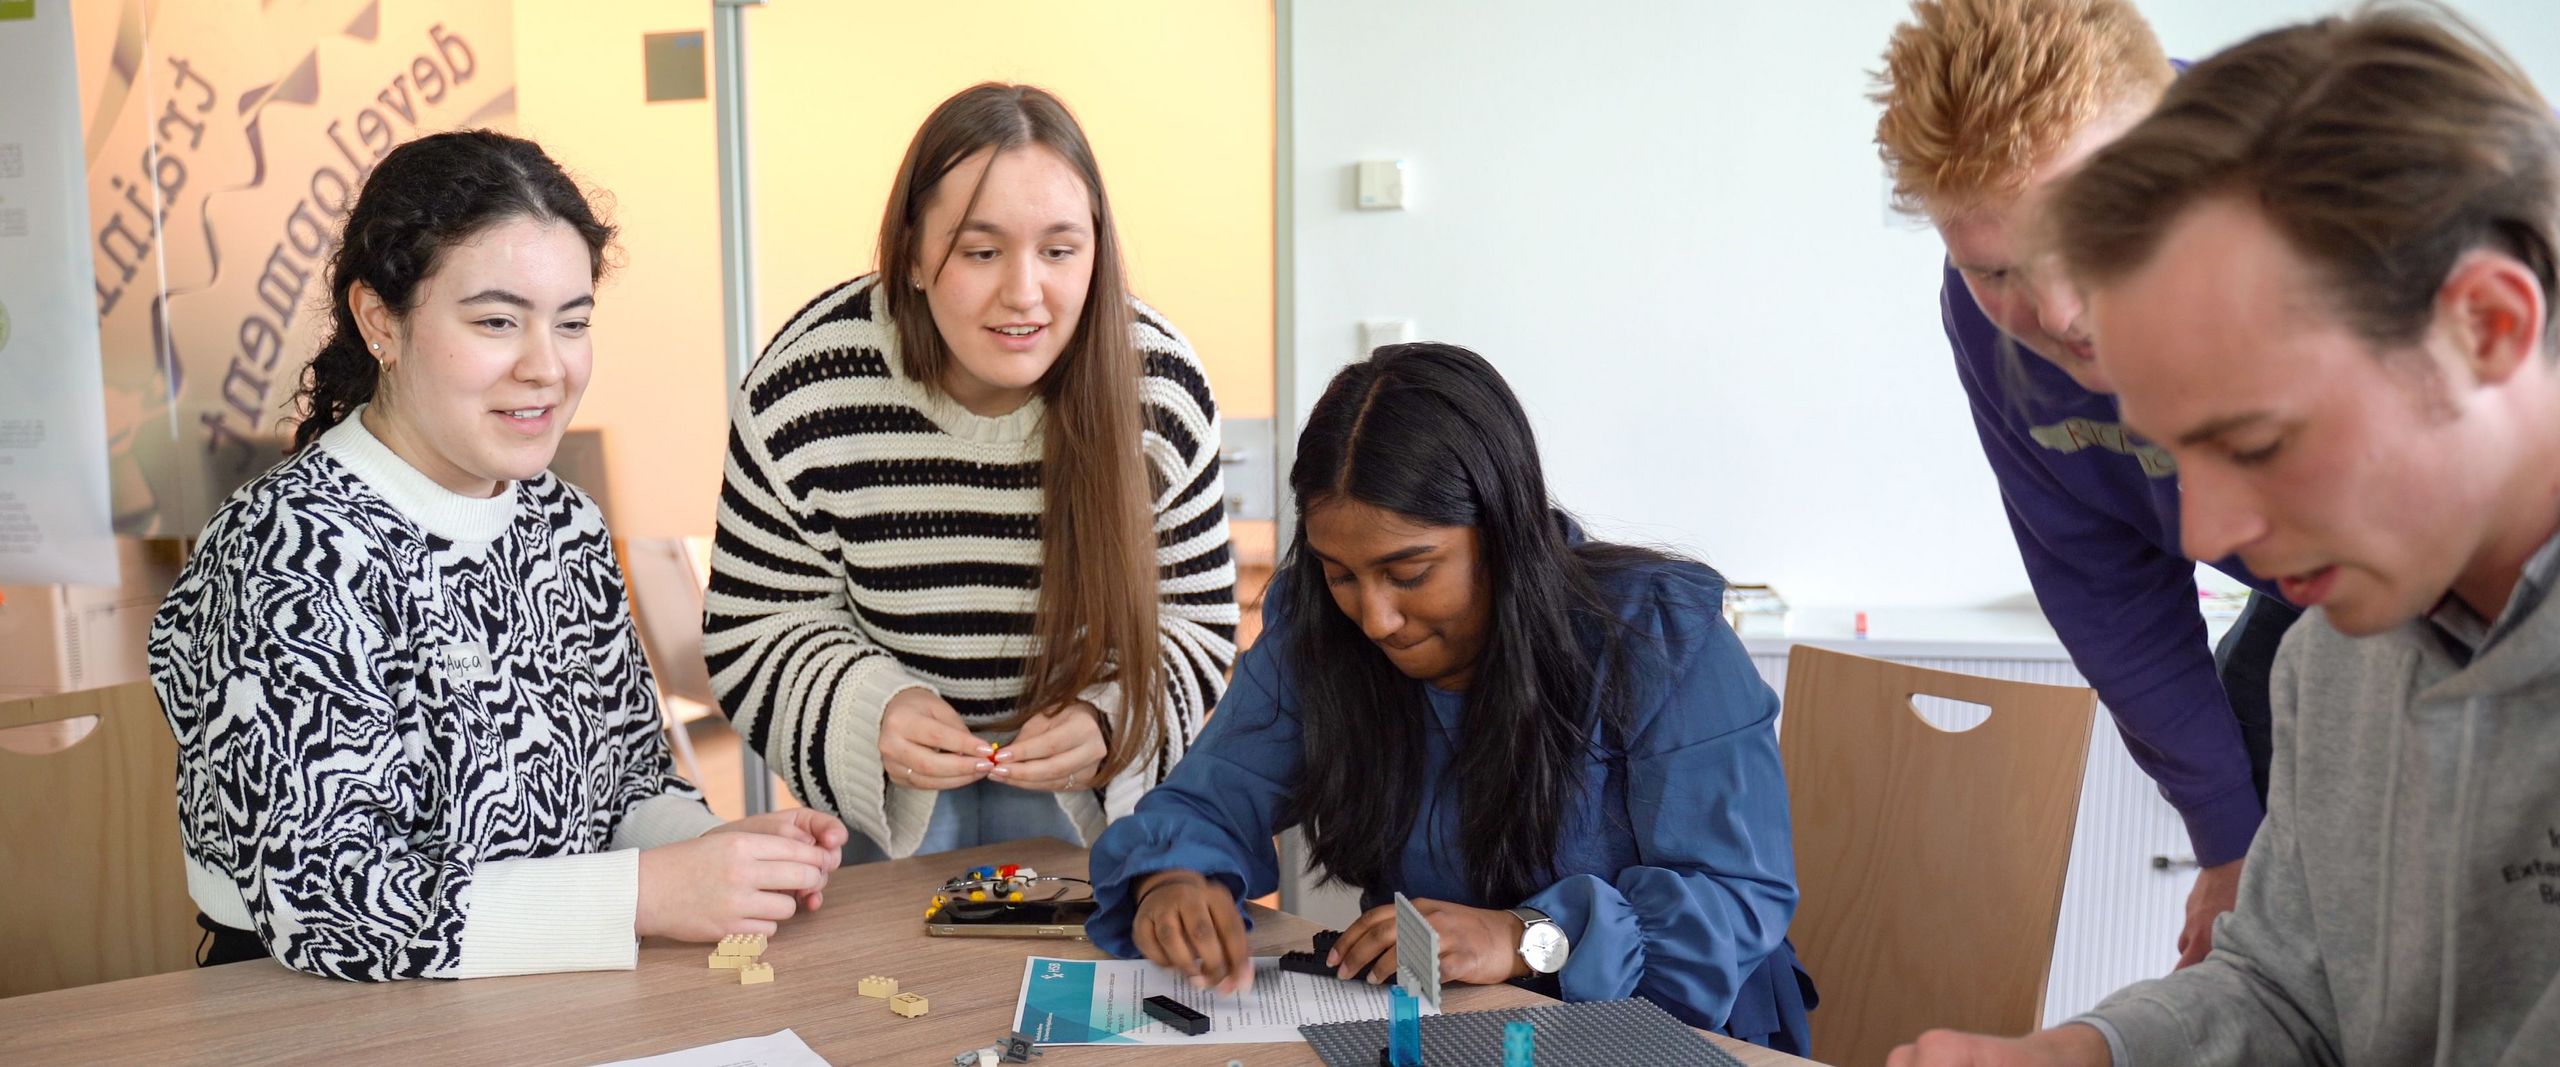 Die Studierenden aus Groningen und Bremen bauen zusammen an einer perfekten Verwaltung